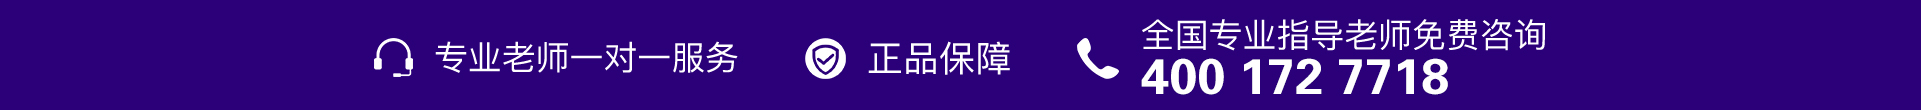 紫色电话-PC.jpg